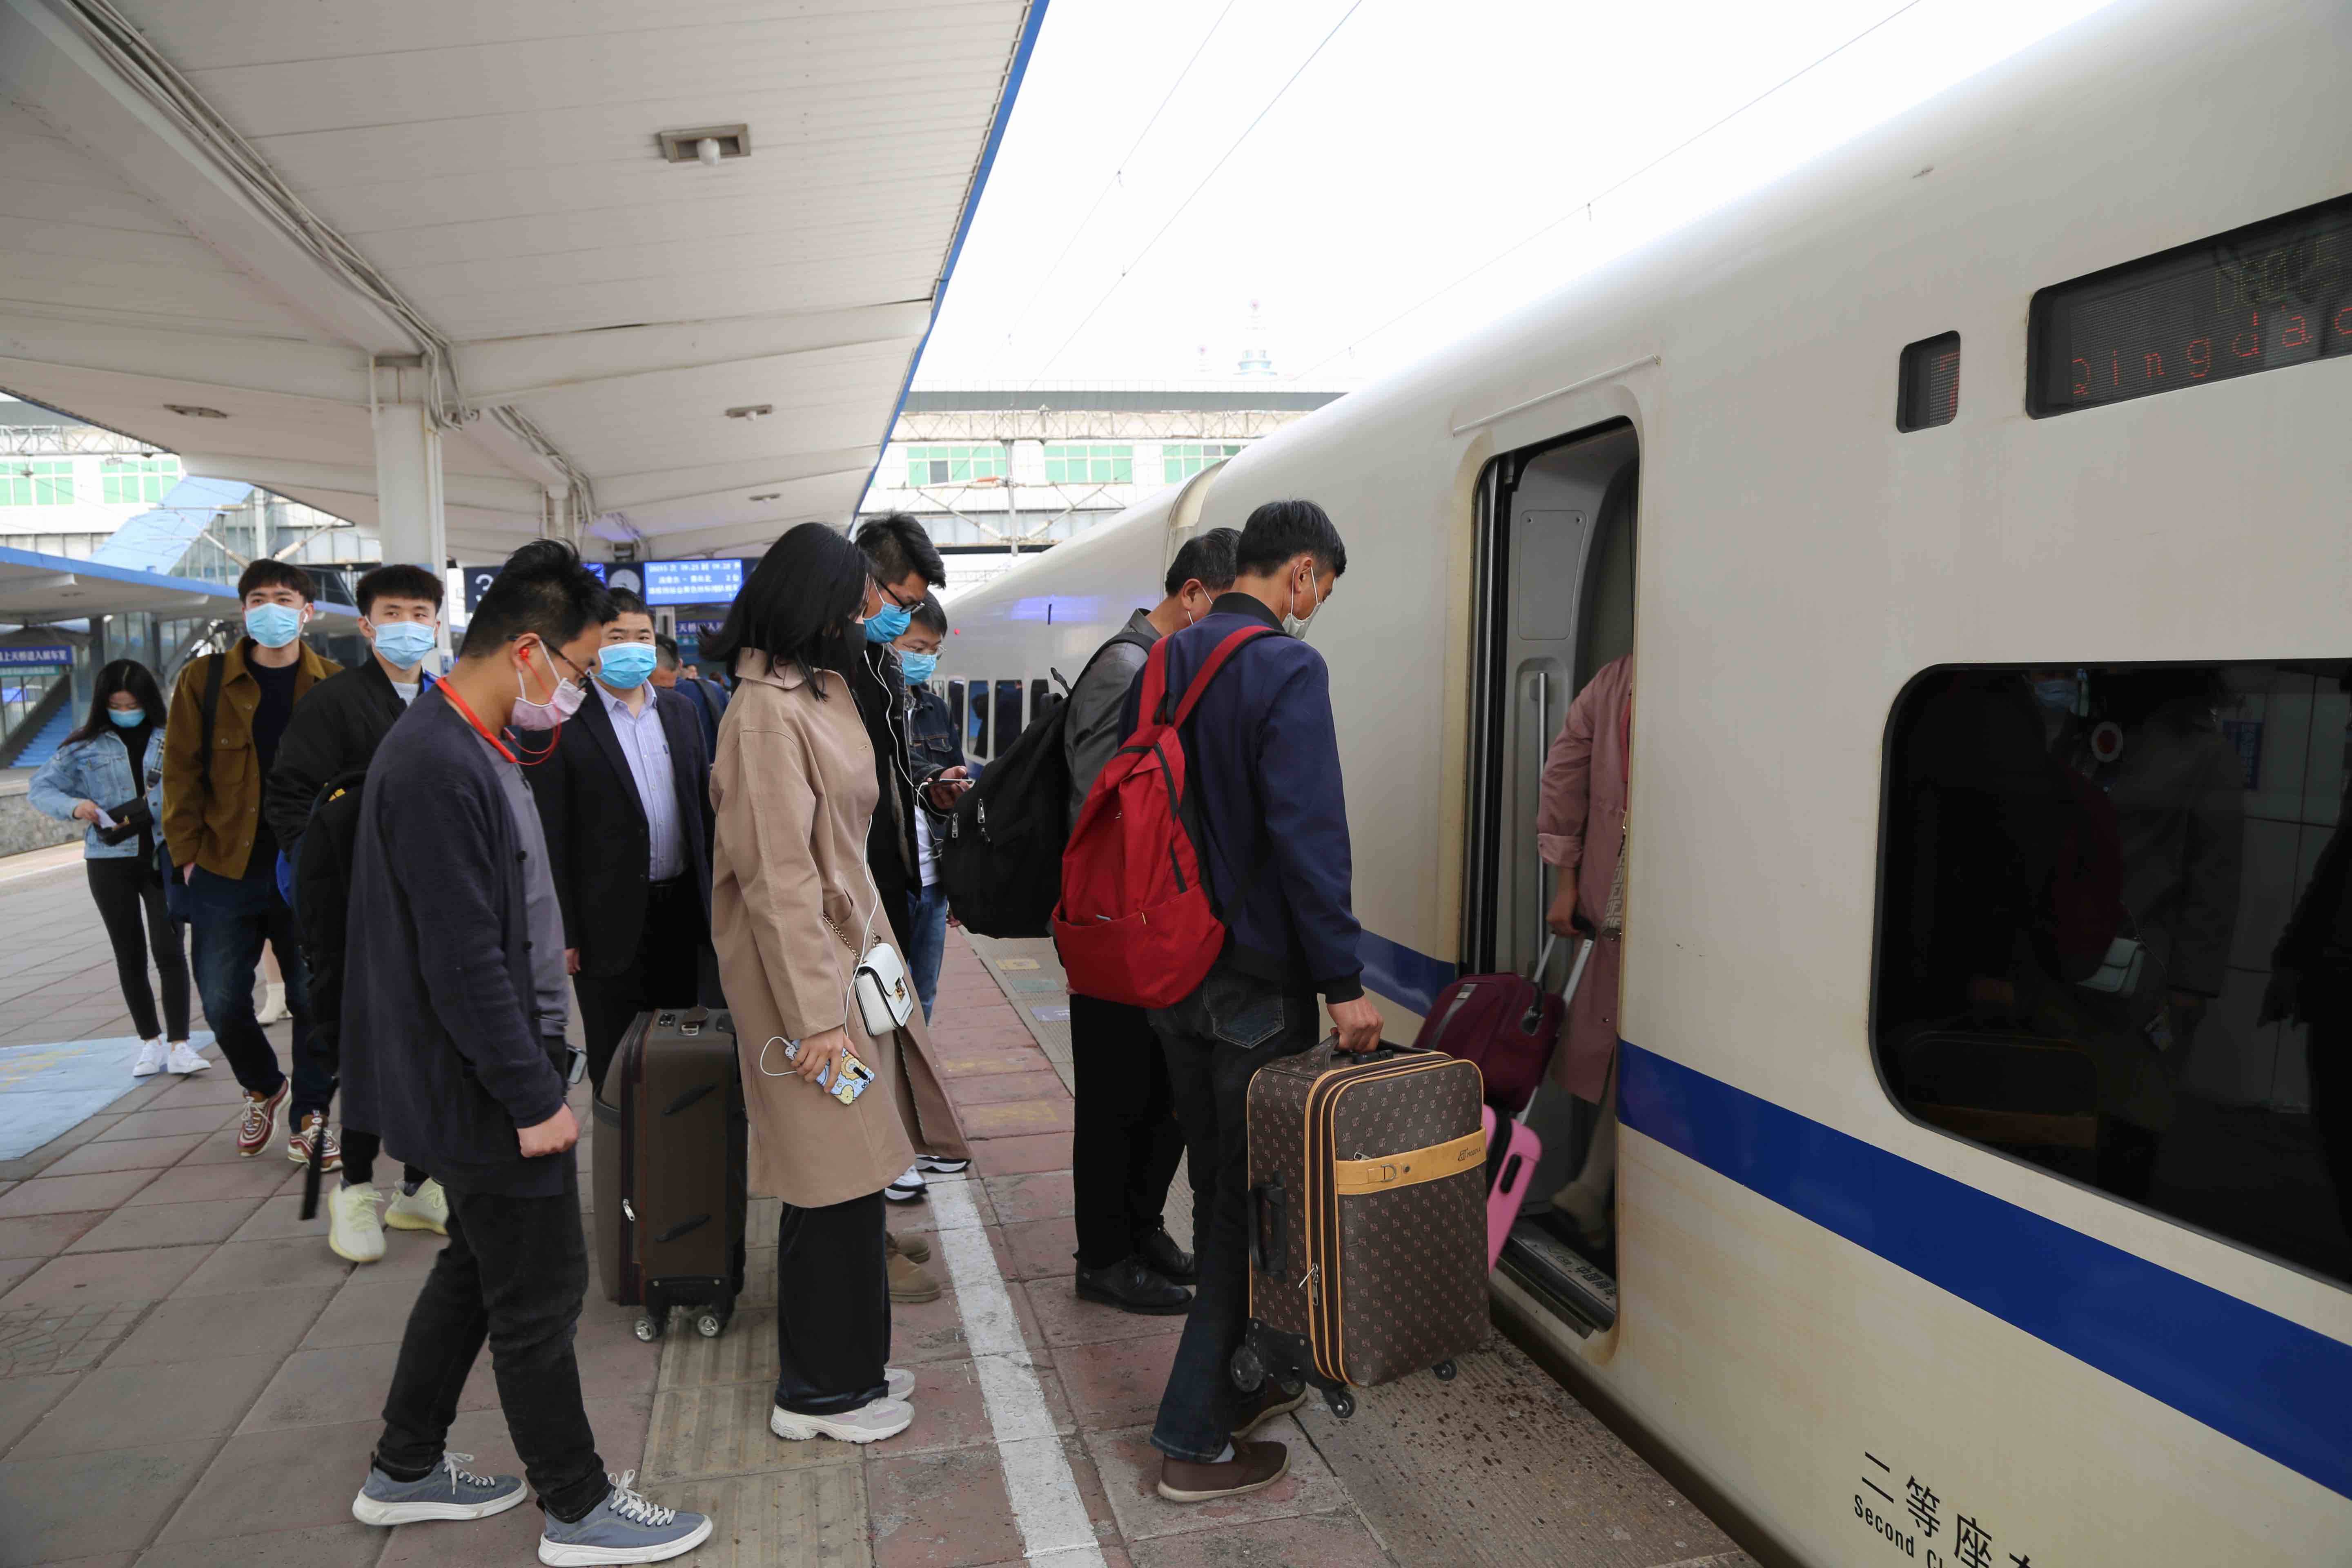 4月10日起铁路调整列车运行图 淄博火车站图定旅客列车增至213趟